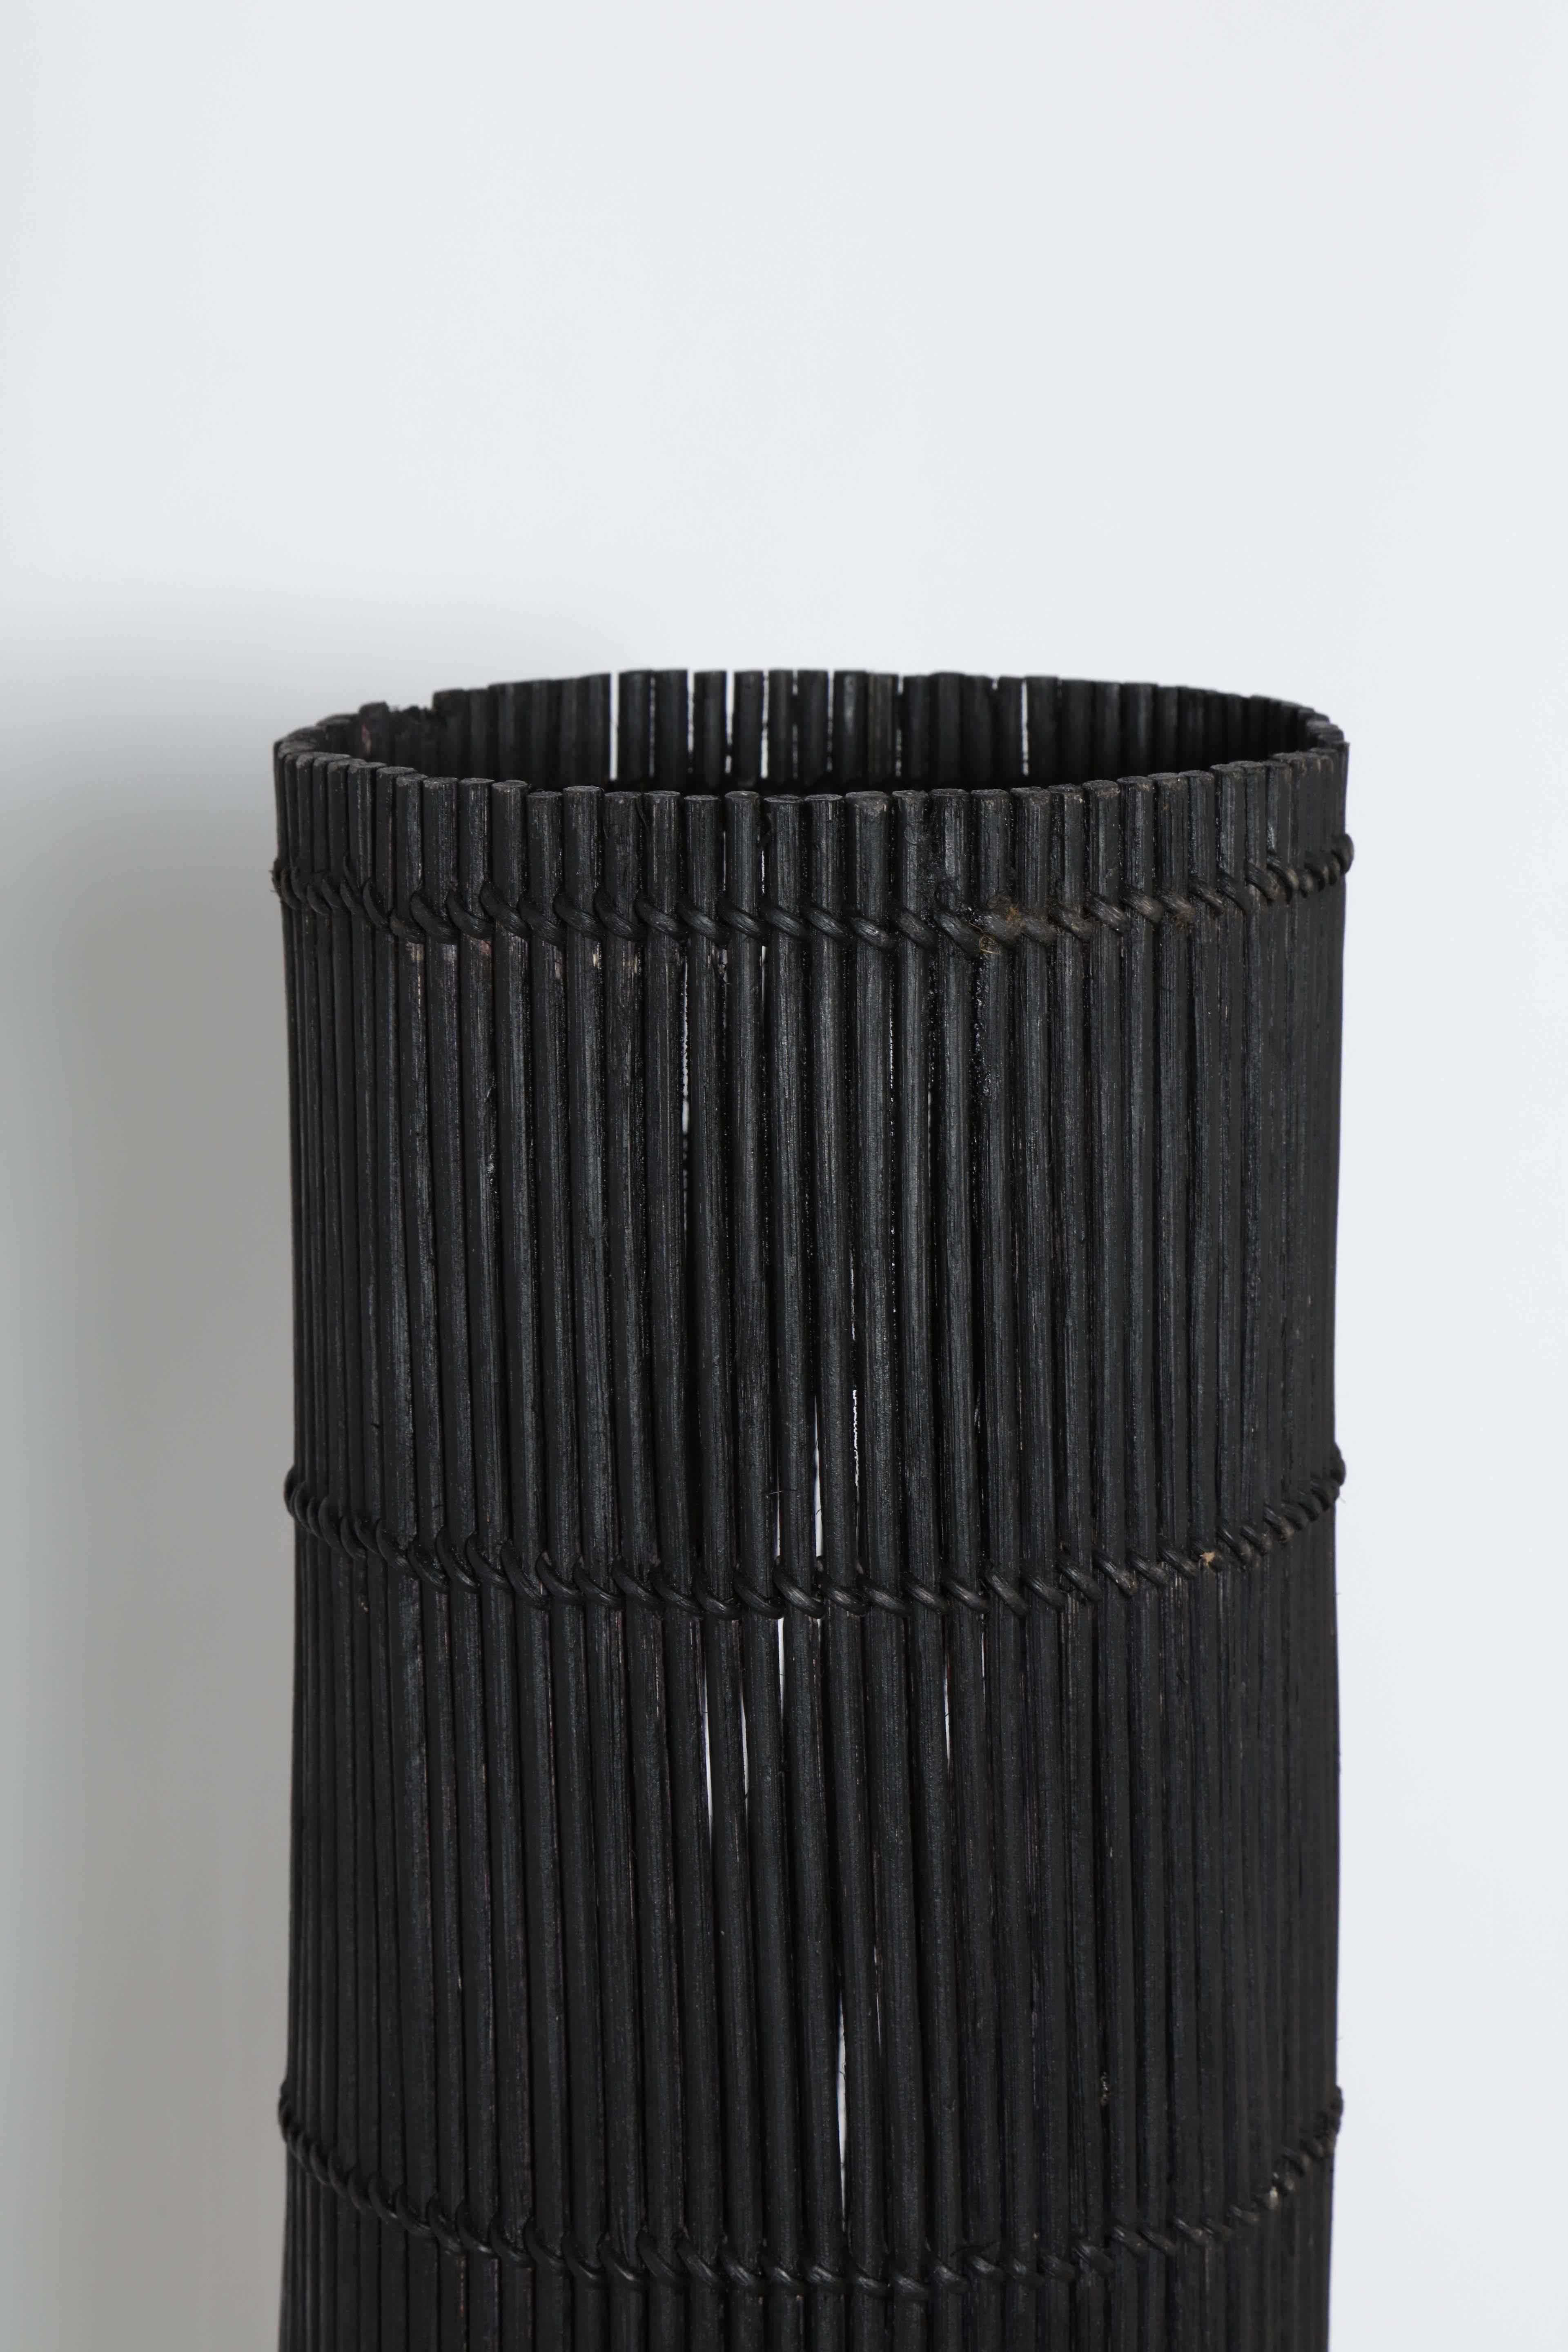 Américain Lampadaire cylindrique en osier noir de style californien moderne Tony Paul, années 1950  en vente